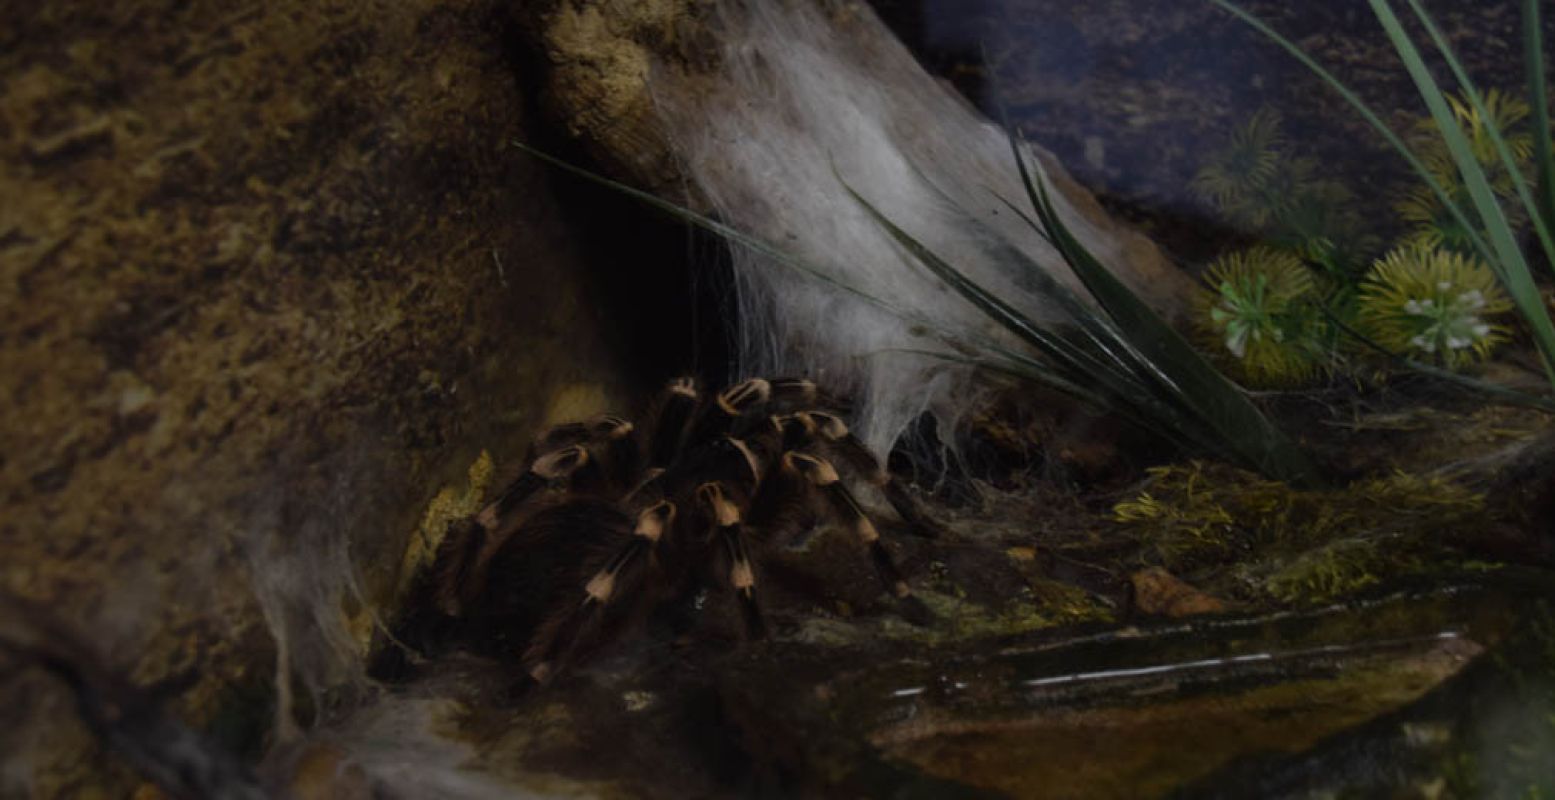 De witknie tussen de spinnenwebben. Foto: DagjeWeg.NL